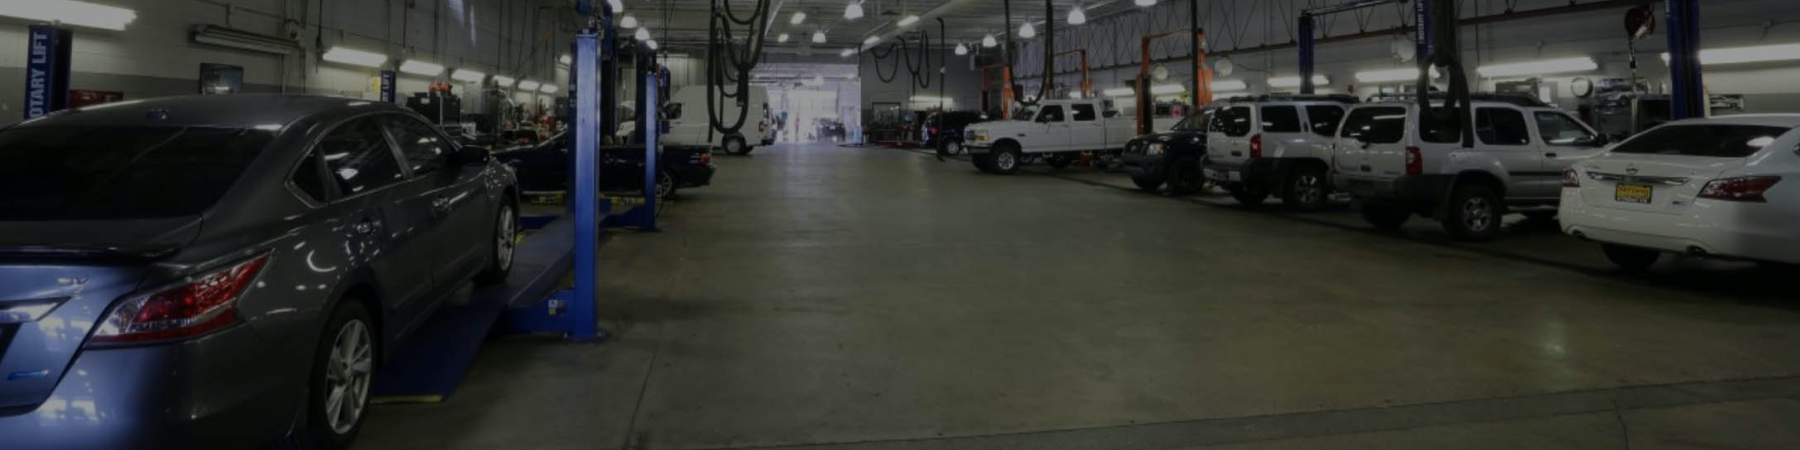 view of service center garage